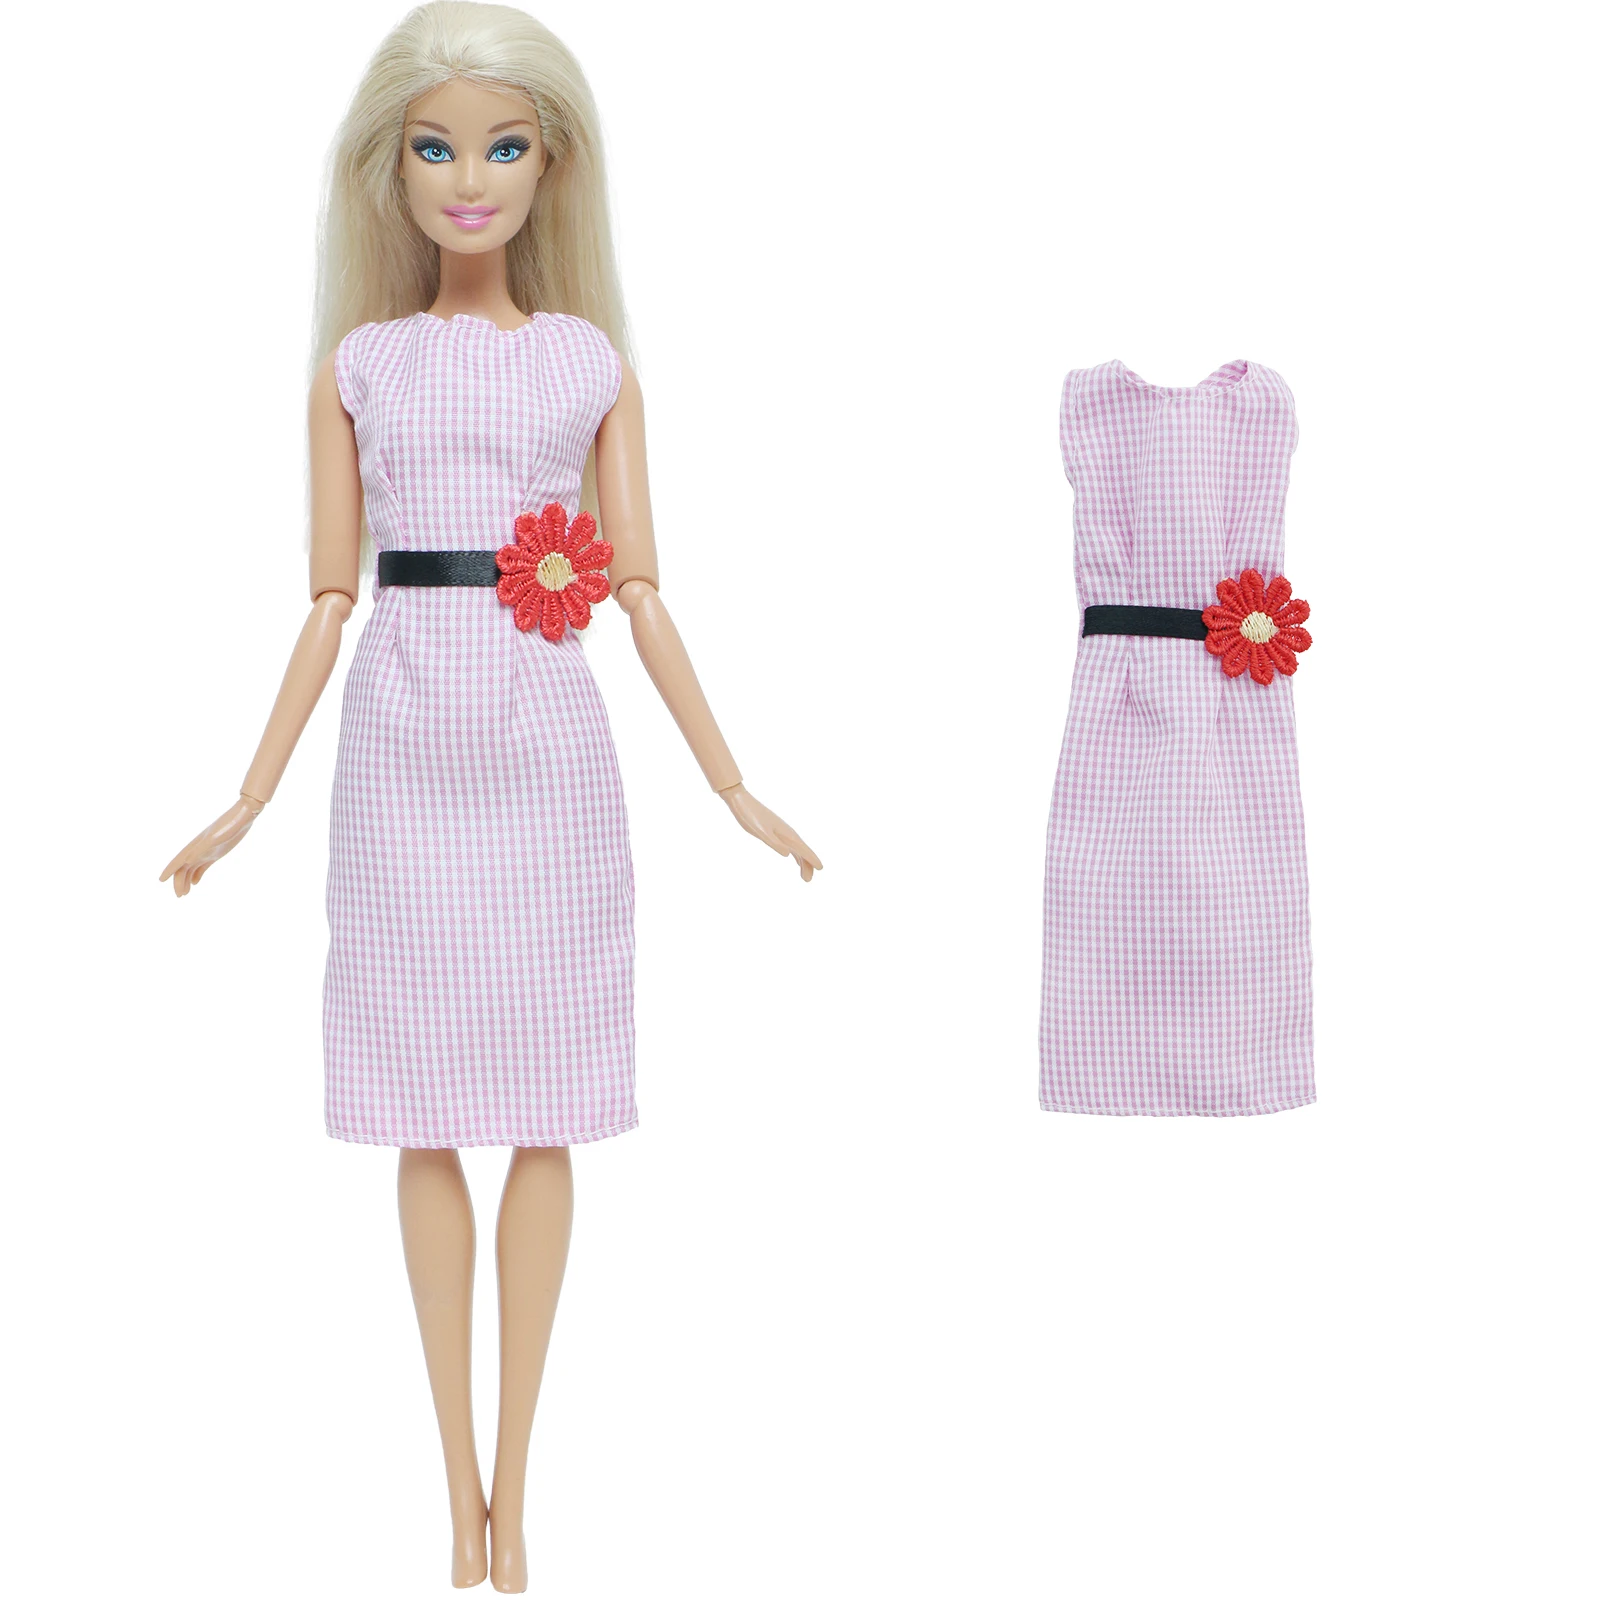 Bjdbus artesanal boneca vestido de festa verão vestir roupa mini vestido  saia flor roupas para barbie boneca acessórios casa boneca brinquedo do  miúdo - AliExpress